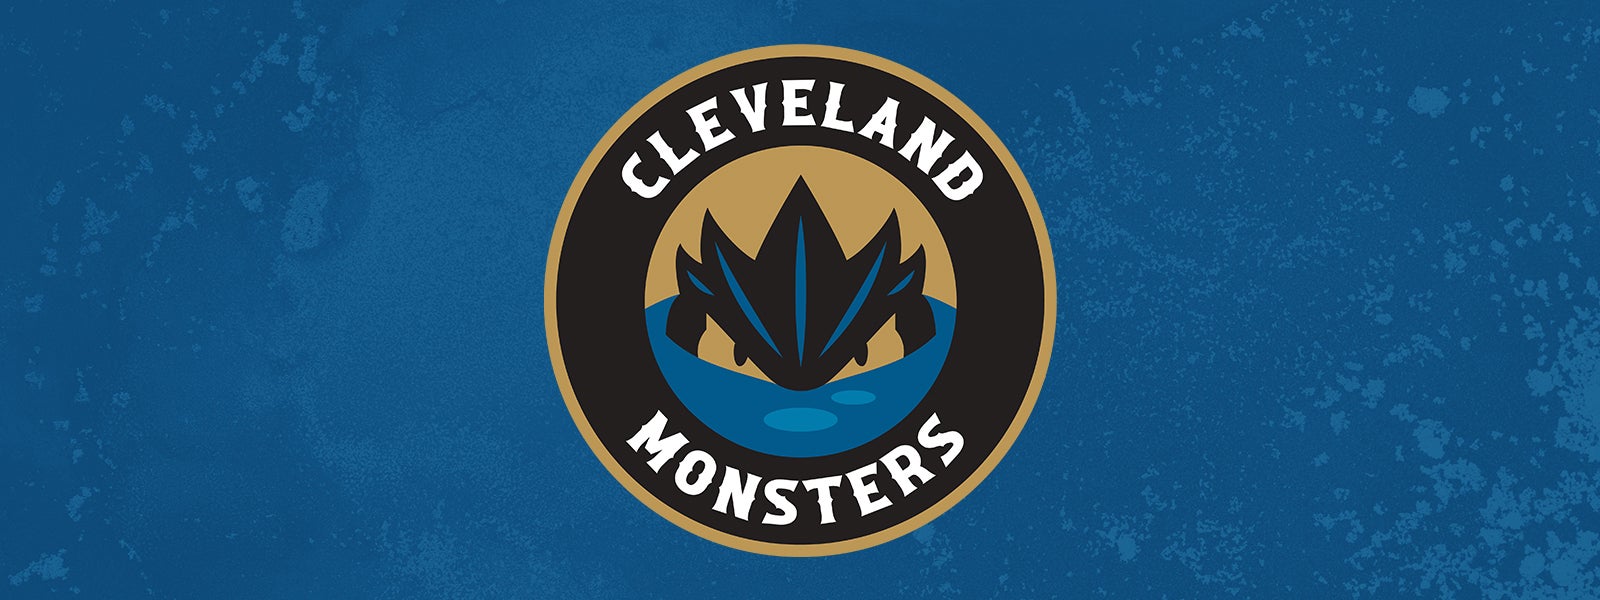 Monsters vs. Providence Bruins 